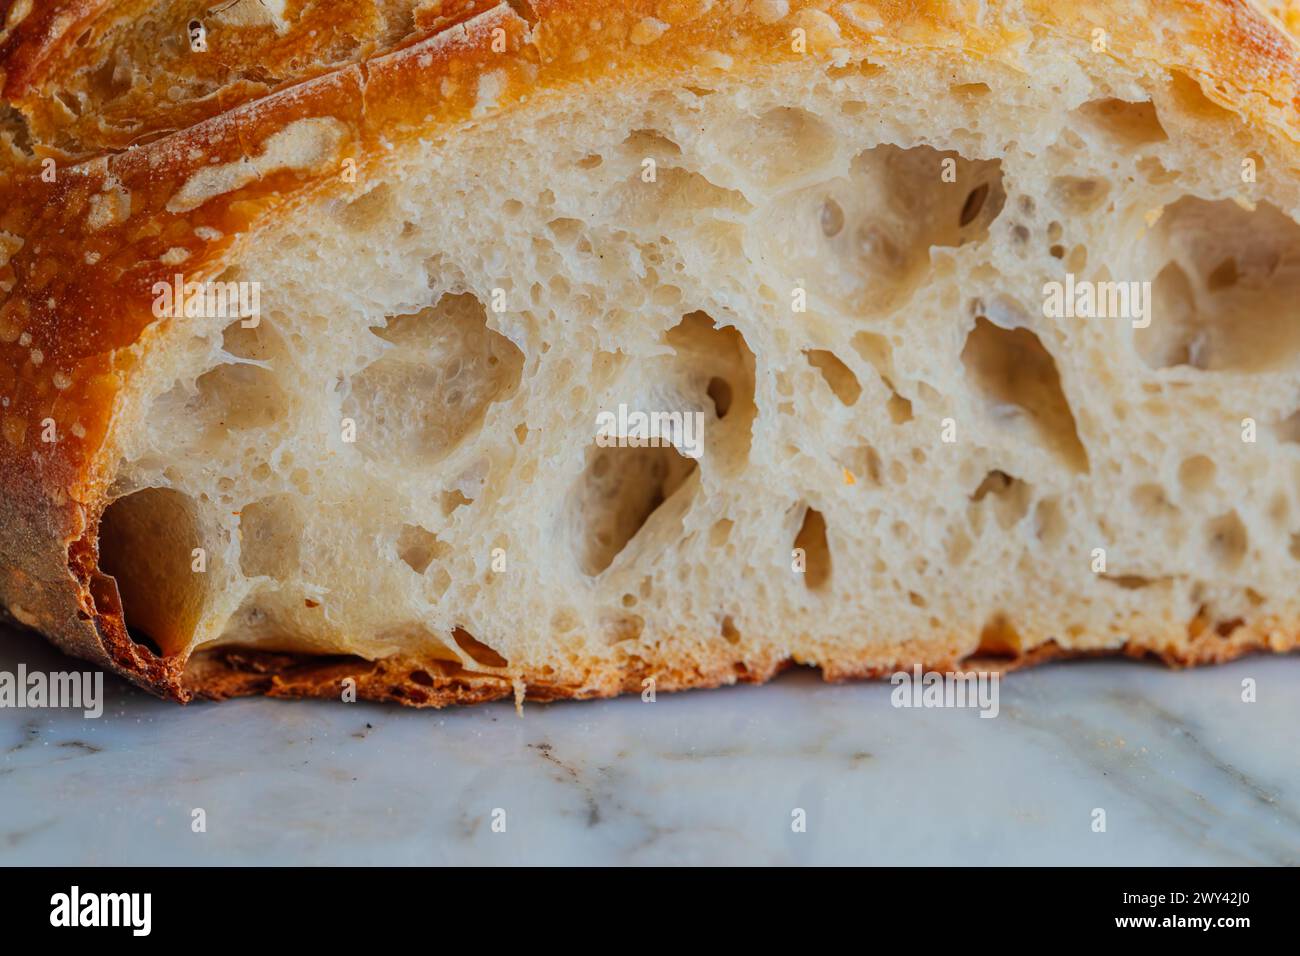 gros plan de l'intérieur du pain au levain Banque D'Images